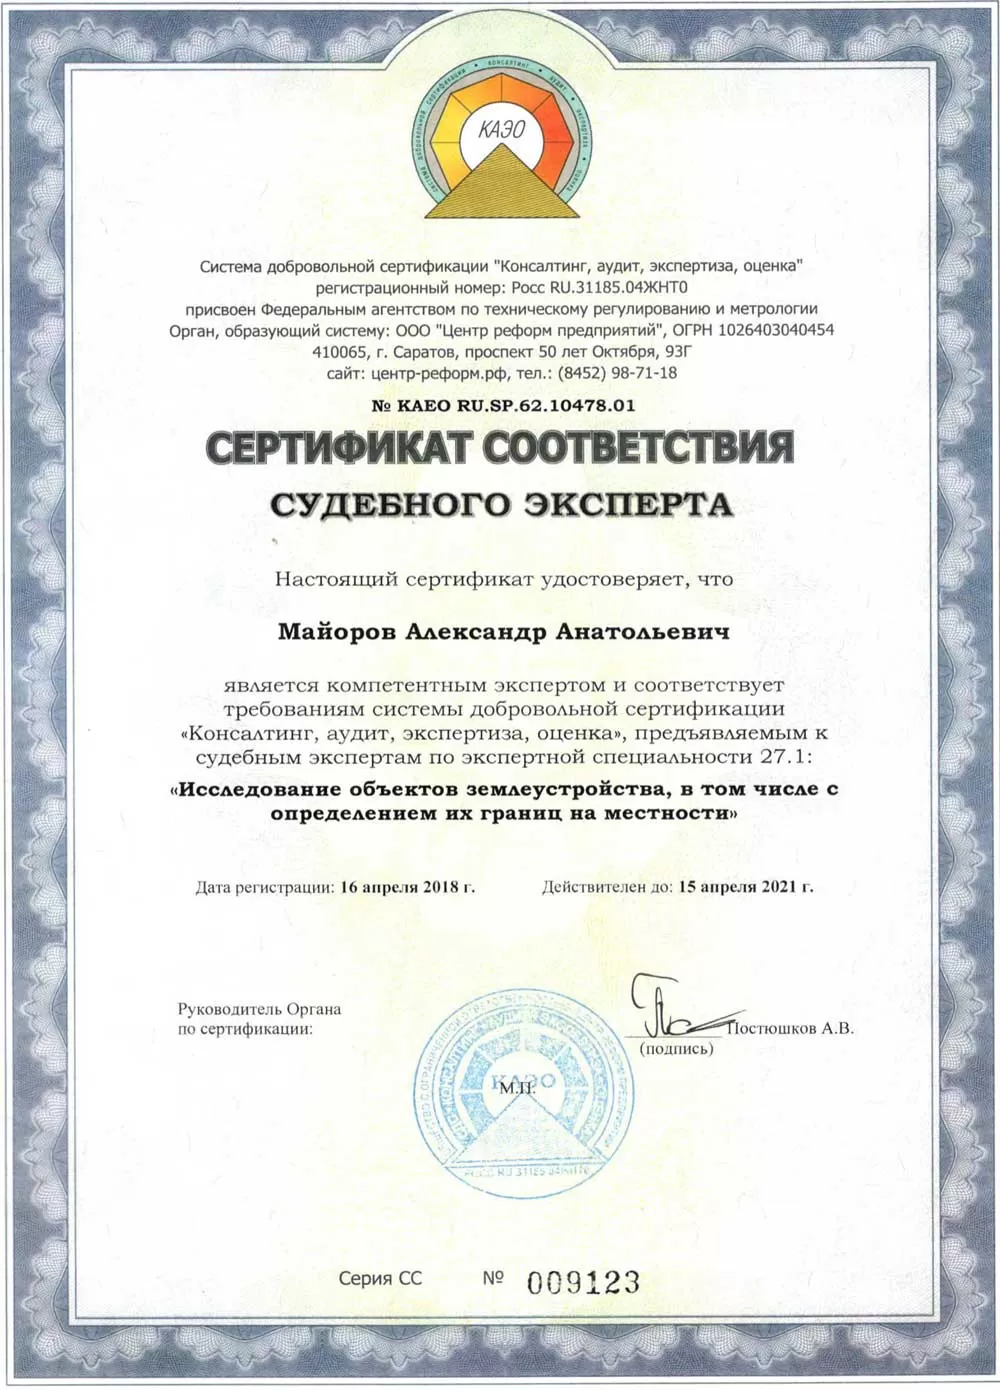  Сертификат судебного эксперта